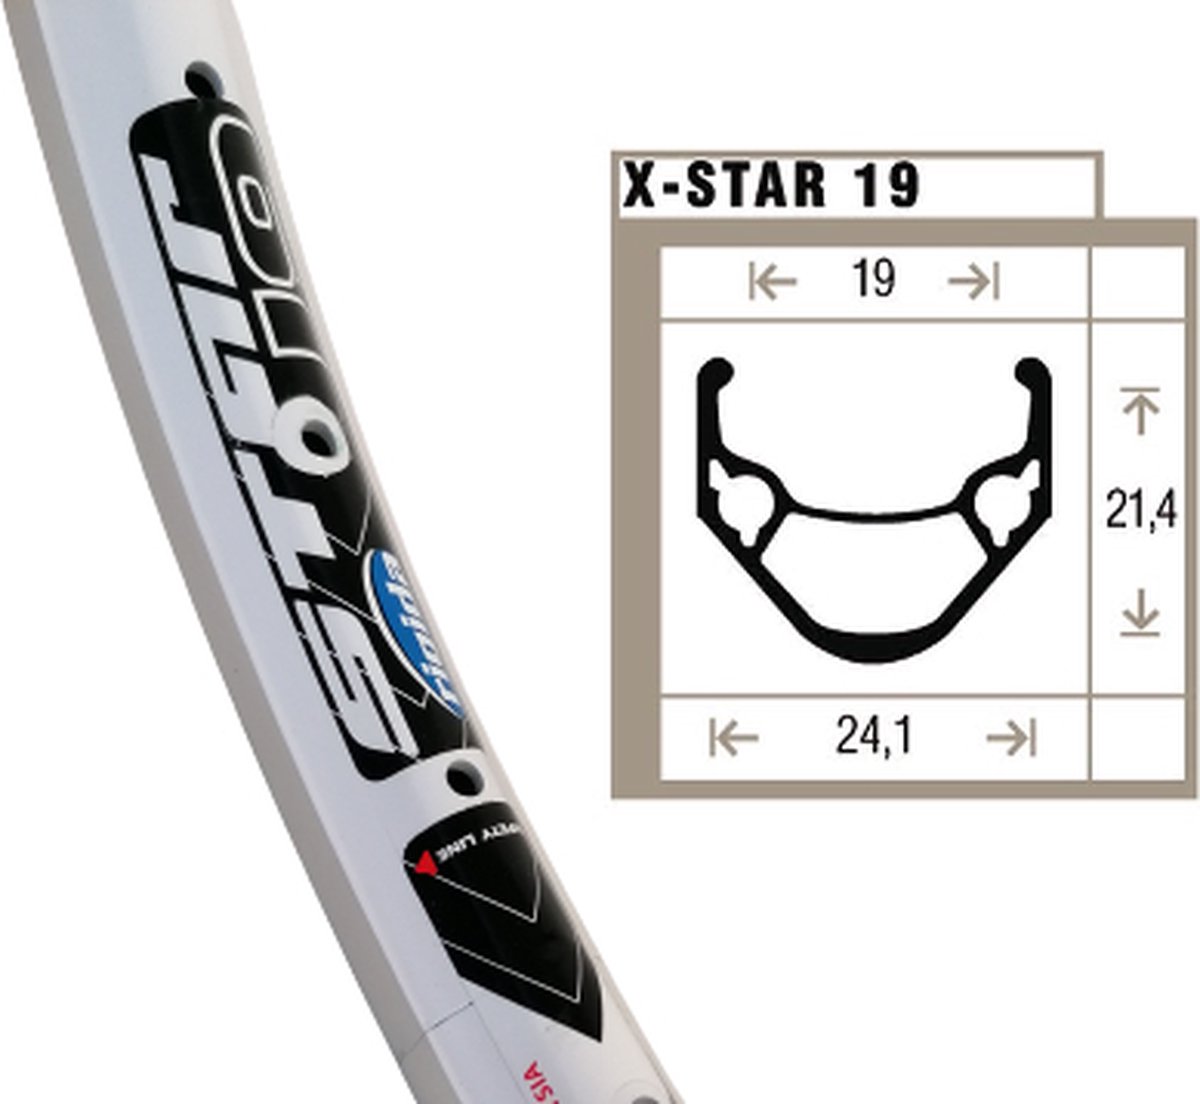 Shining X-star 19 velg wit etrto 507-19 (24x1.75) 36-gaats